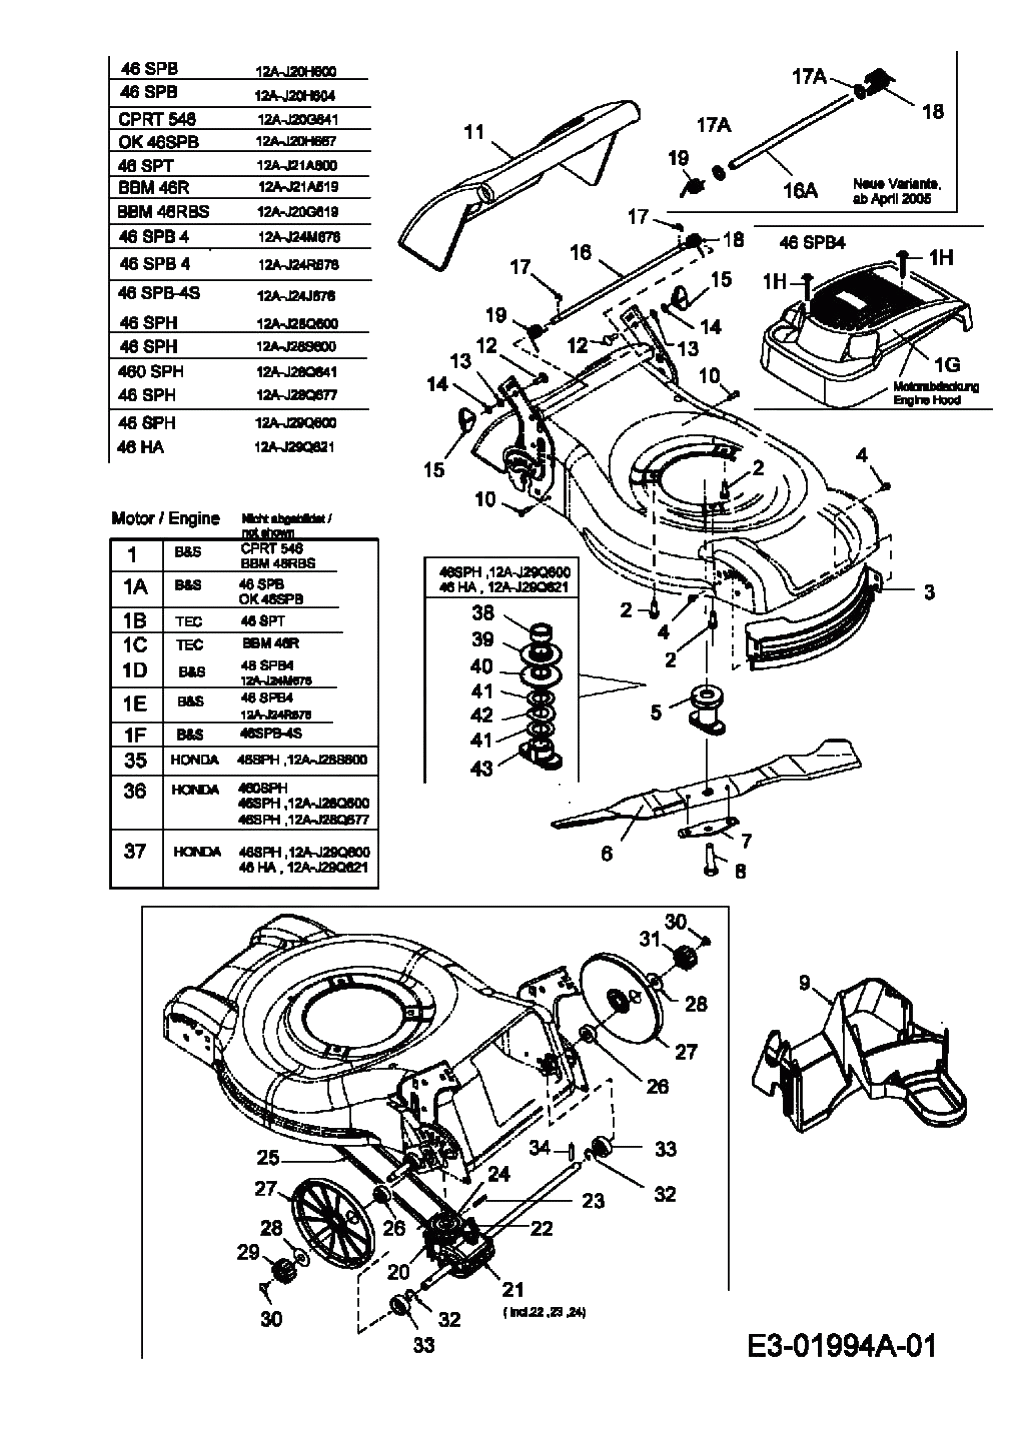 MTD Артикул 12A-J28Q641 (год выпуска 2005). Коробка передач, нож, двигатель